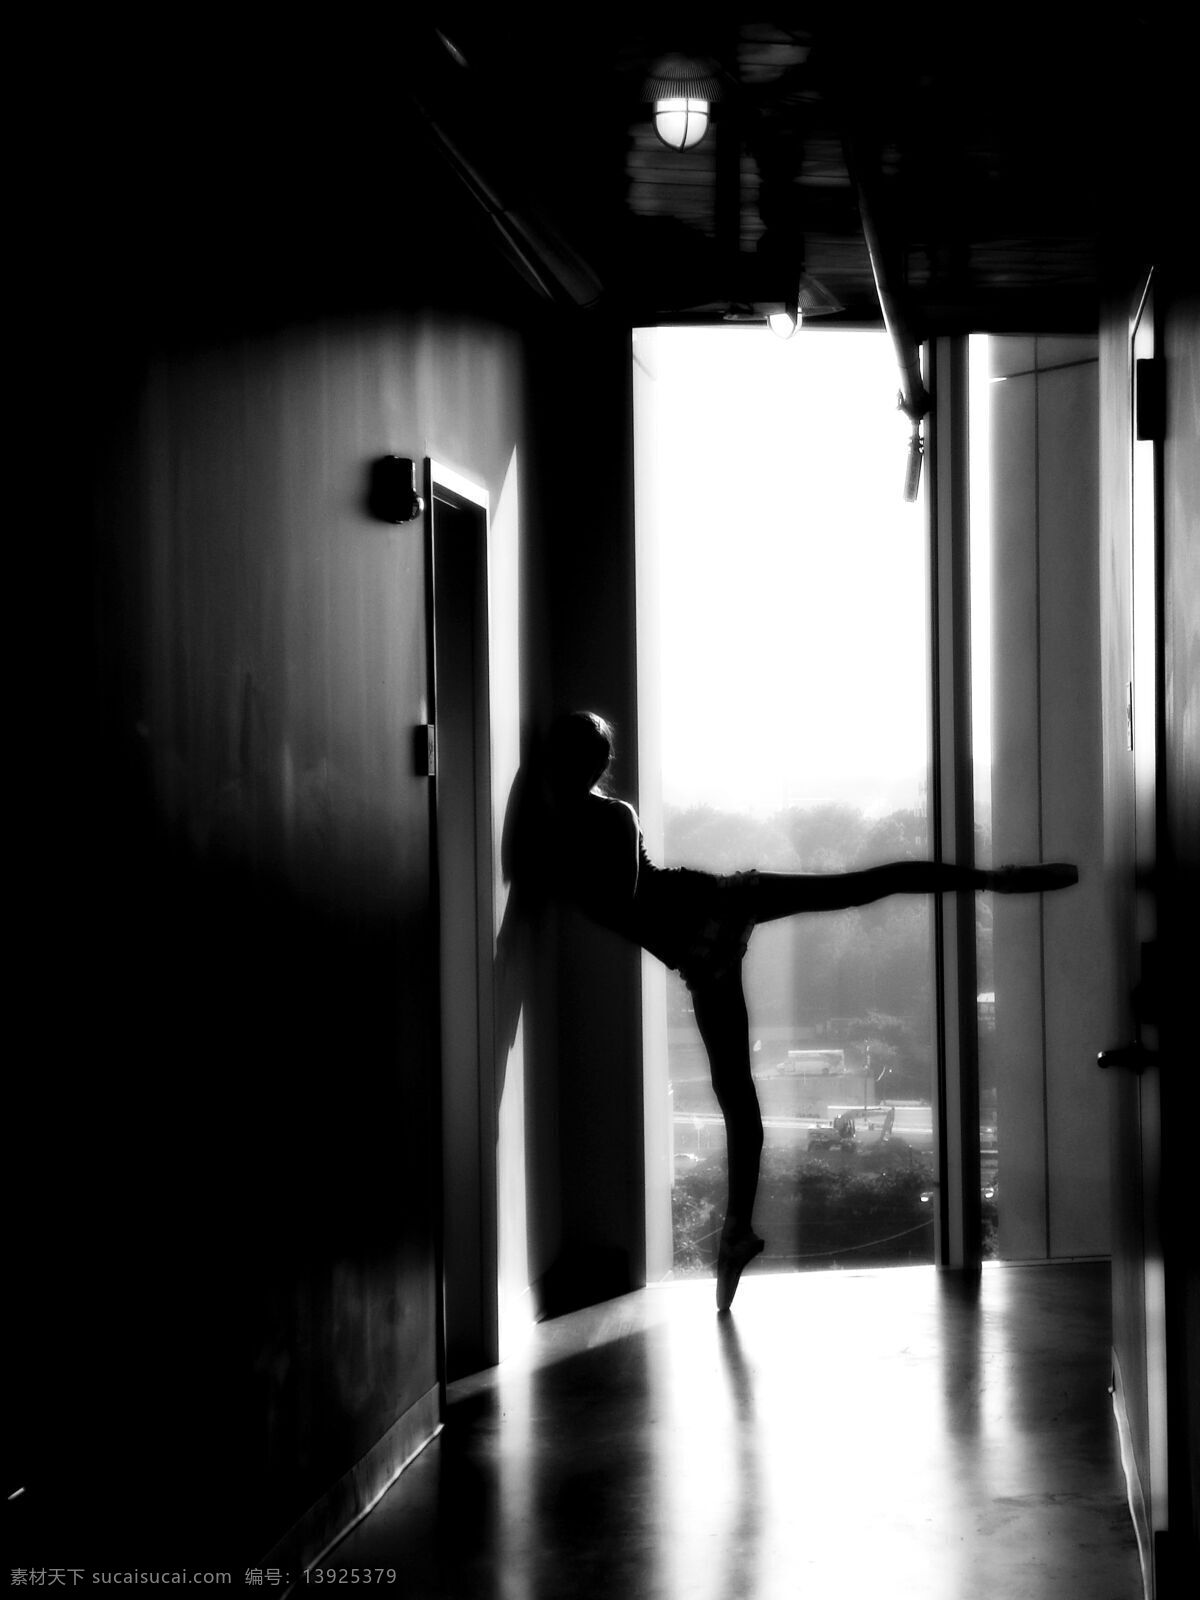 舞蹈 人物图片 芭蕾 窗 黑白 室内 文化艺术 舞蹈人物 舞者 舞姿 ballet 造型 艺术 舞蹈音乐 psd源文件